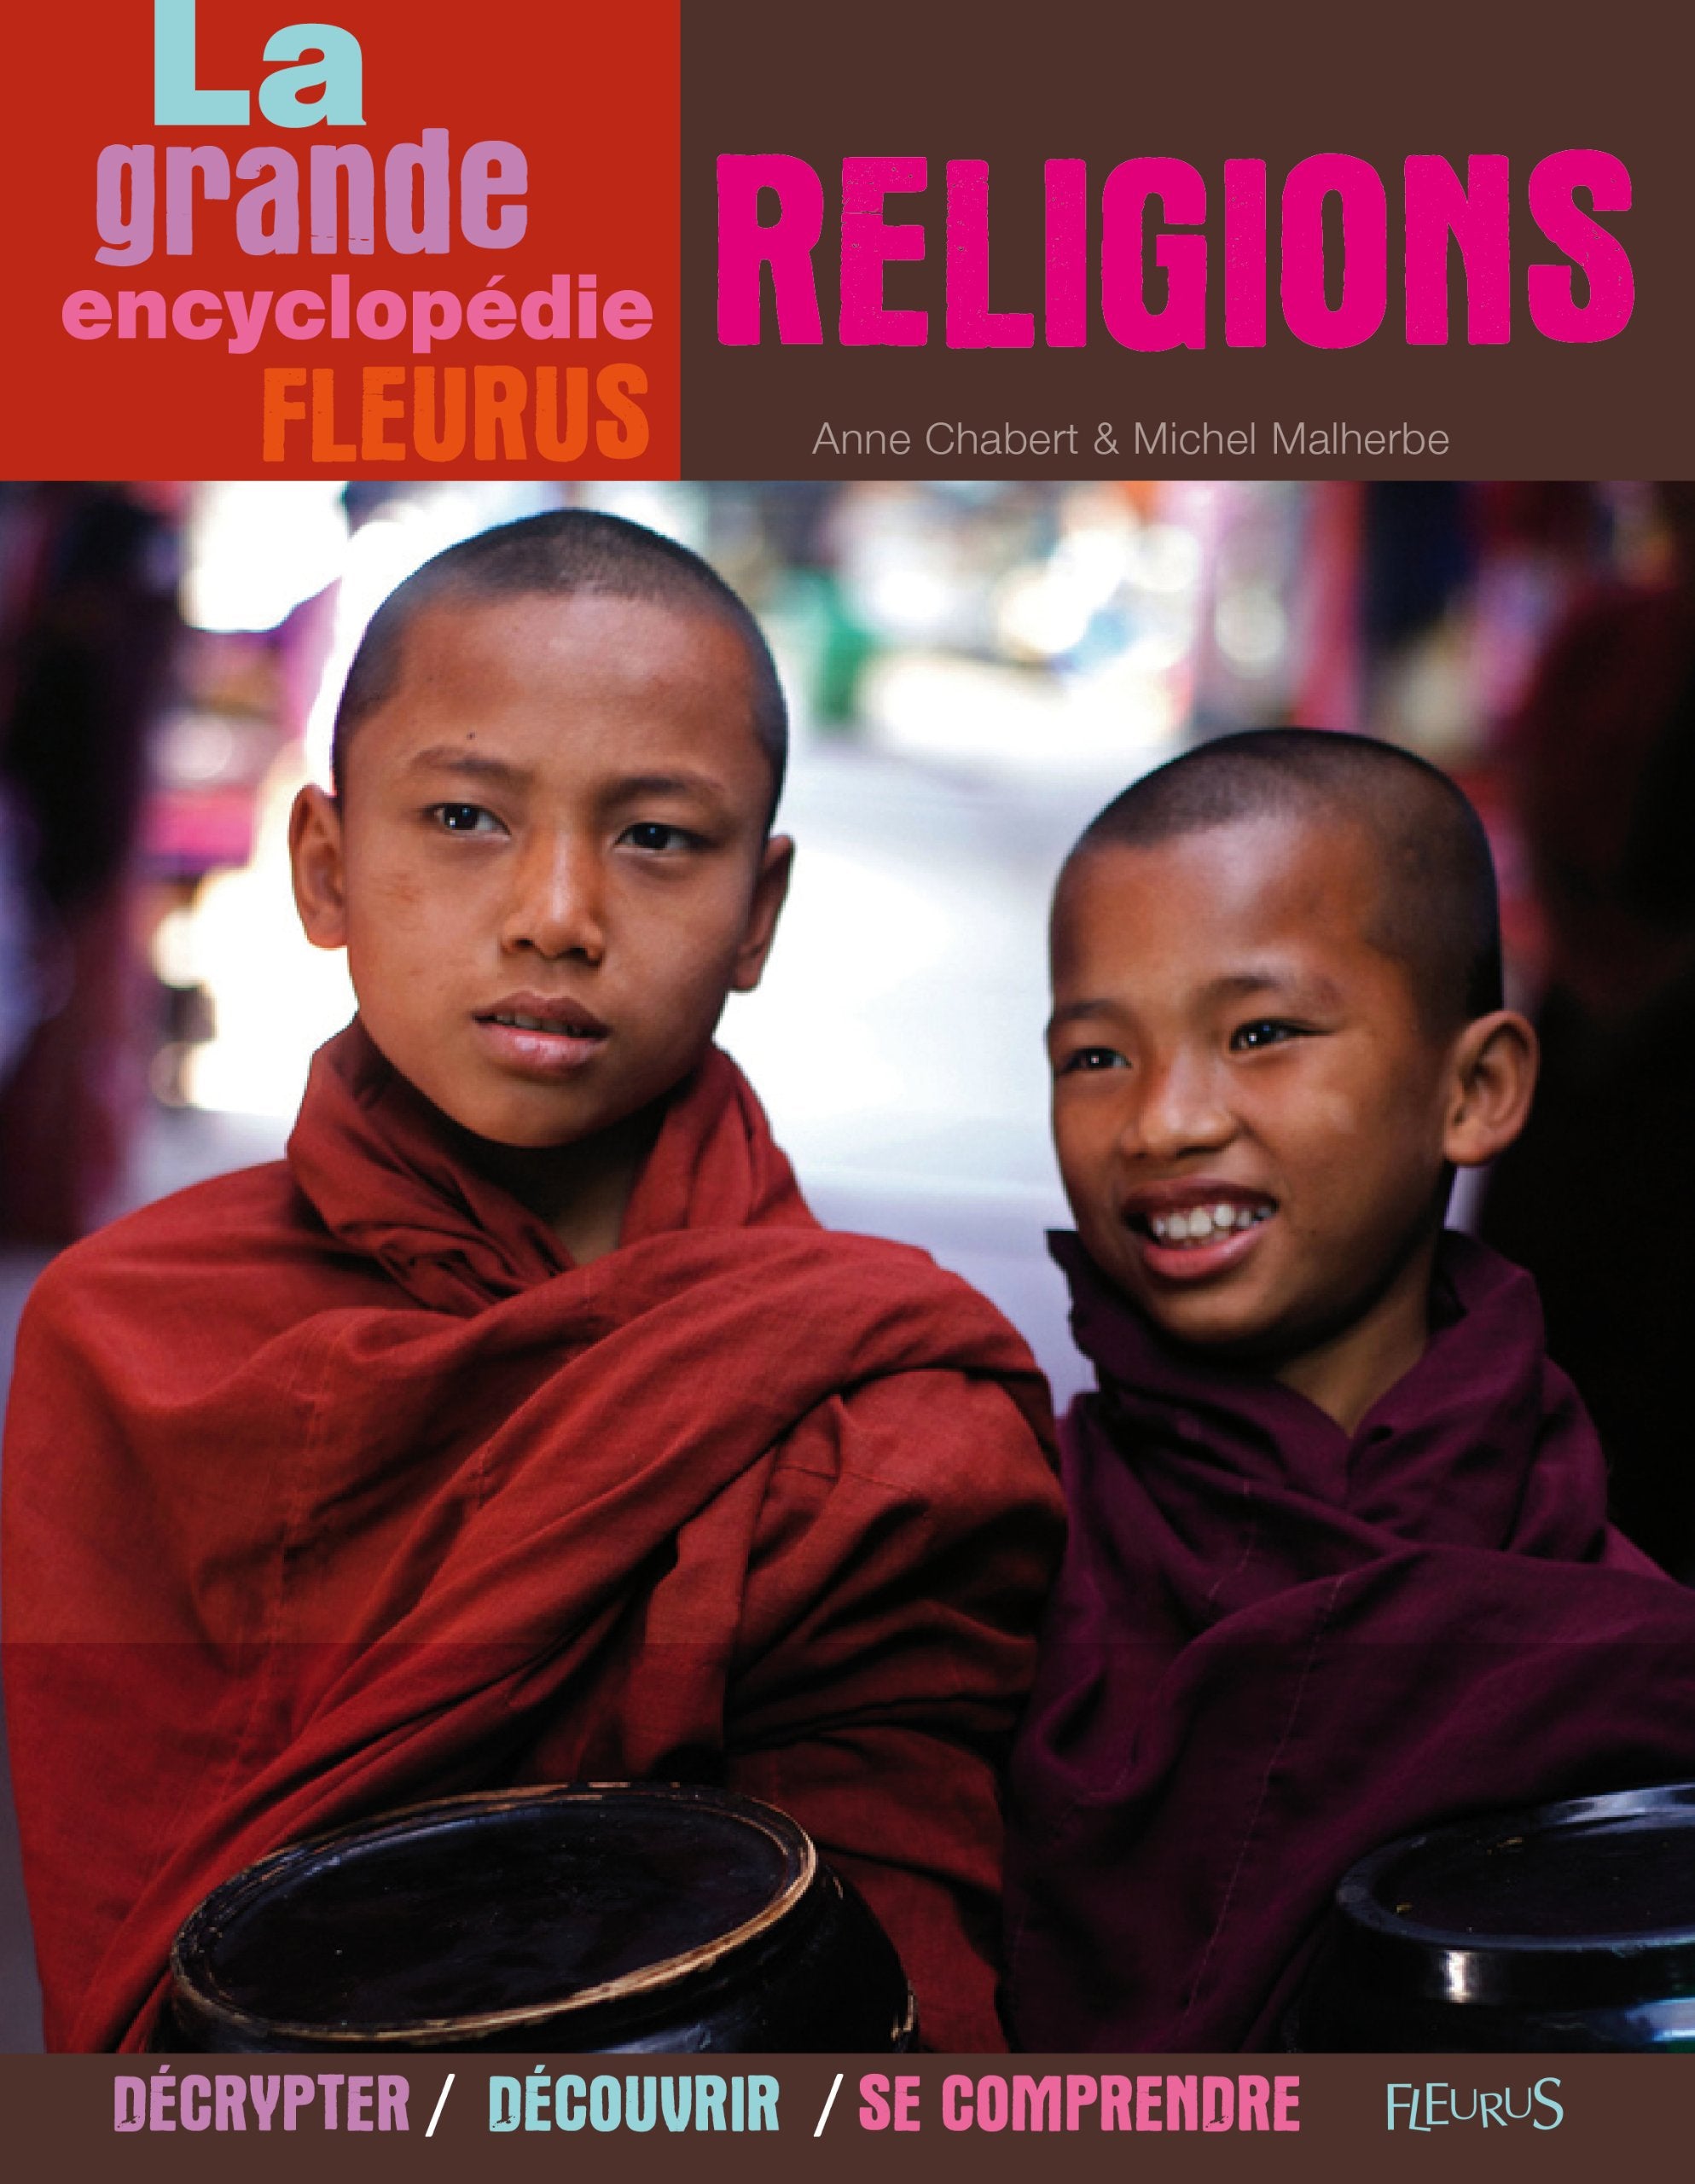 Livre ISBN 2215100125 La grande encyclopédie Fleurus : Religions